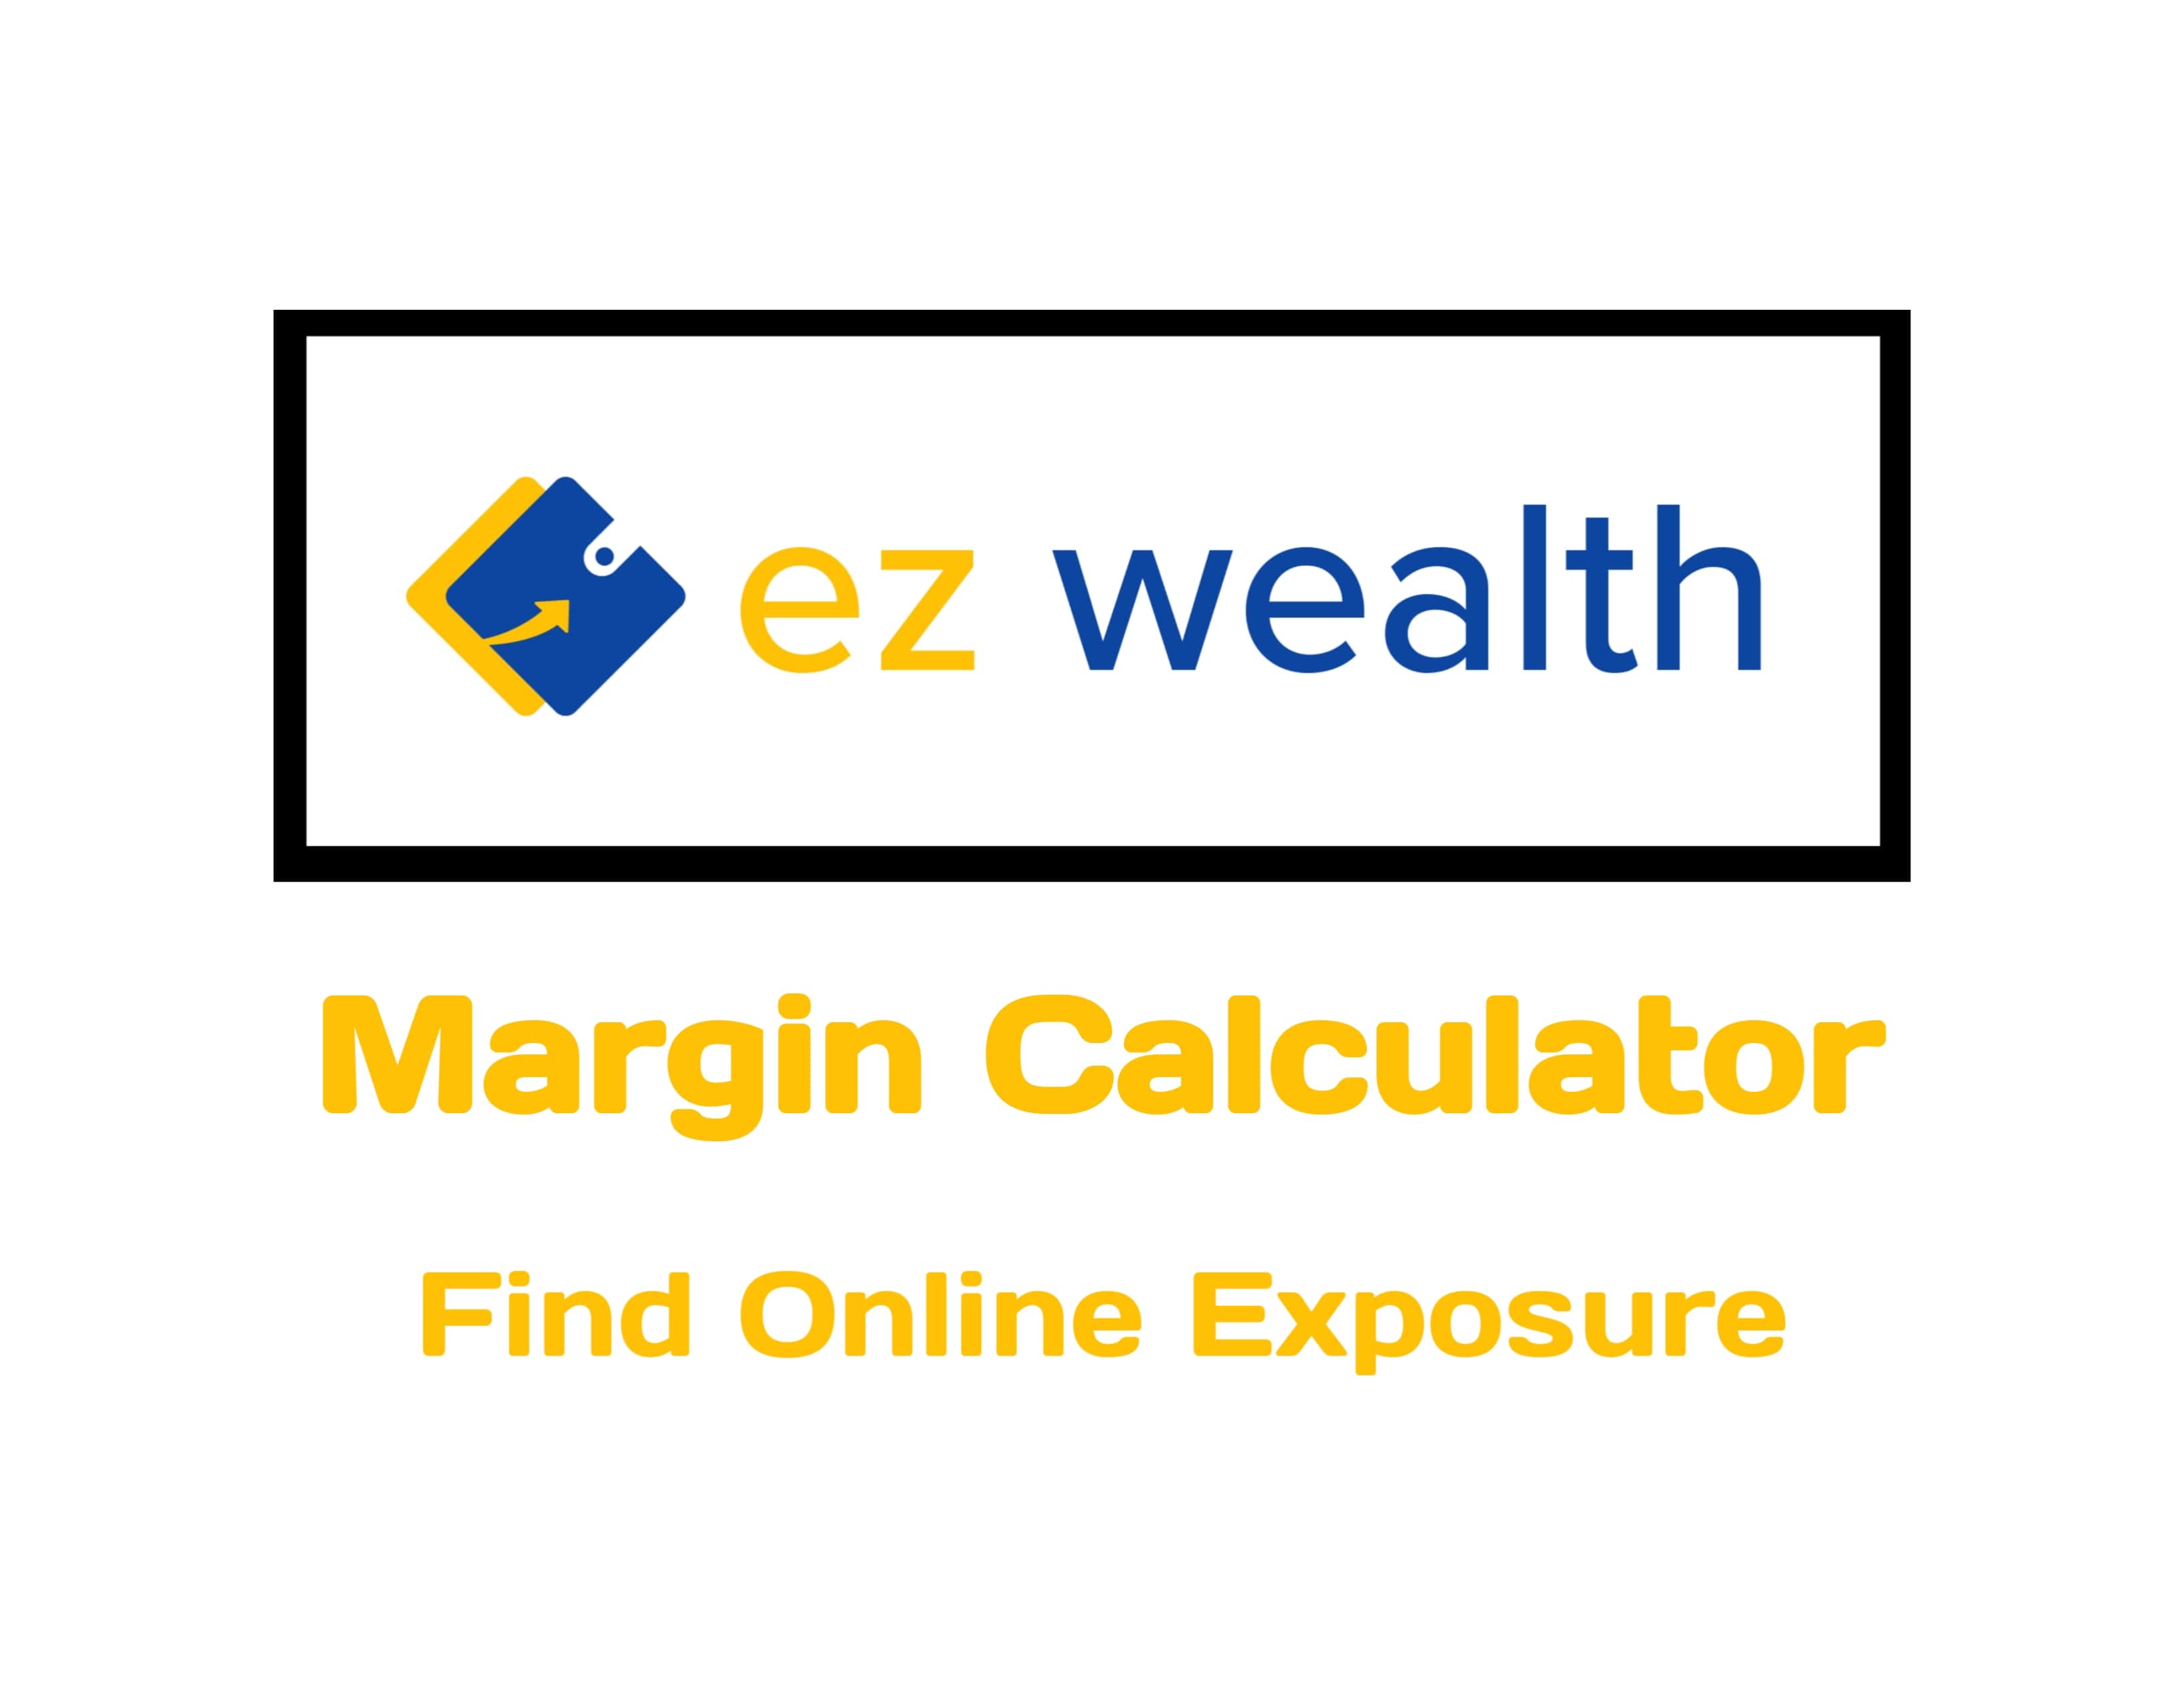 EZ wealth Margin Calculator